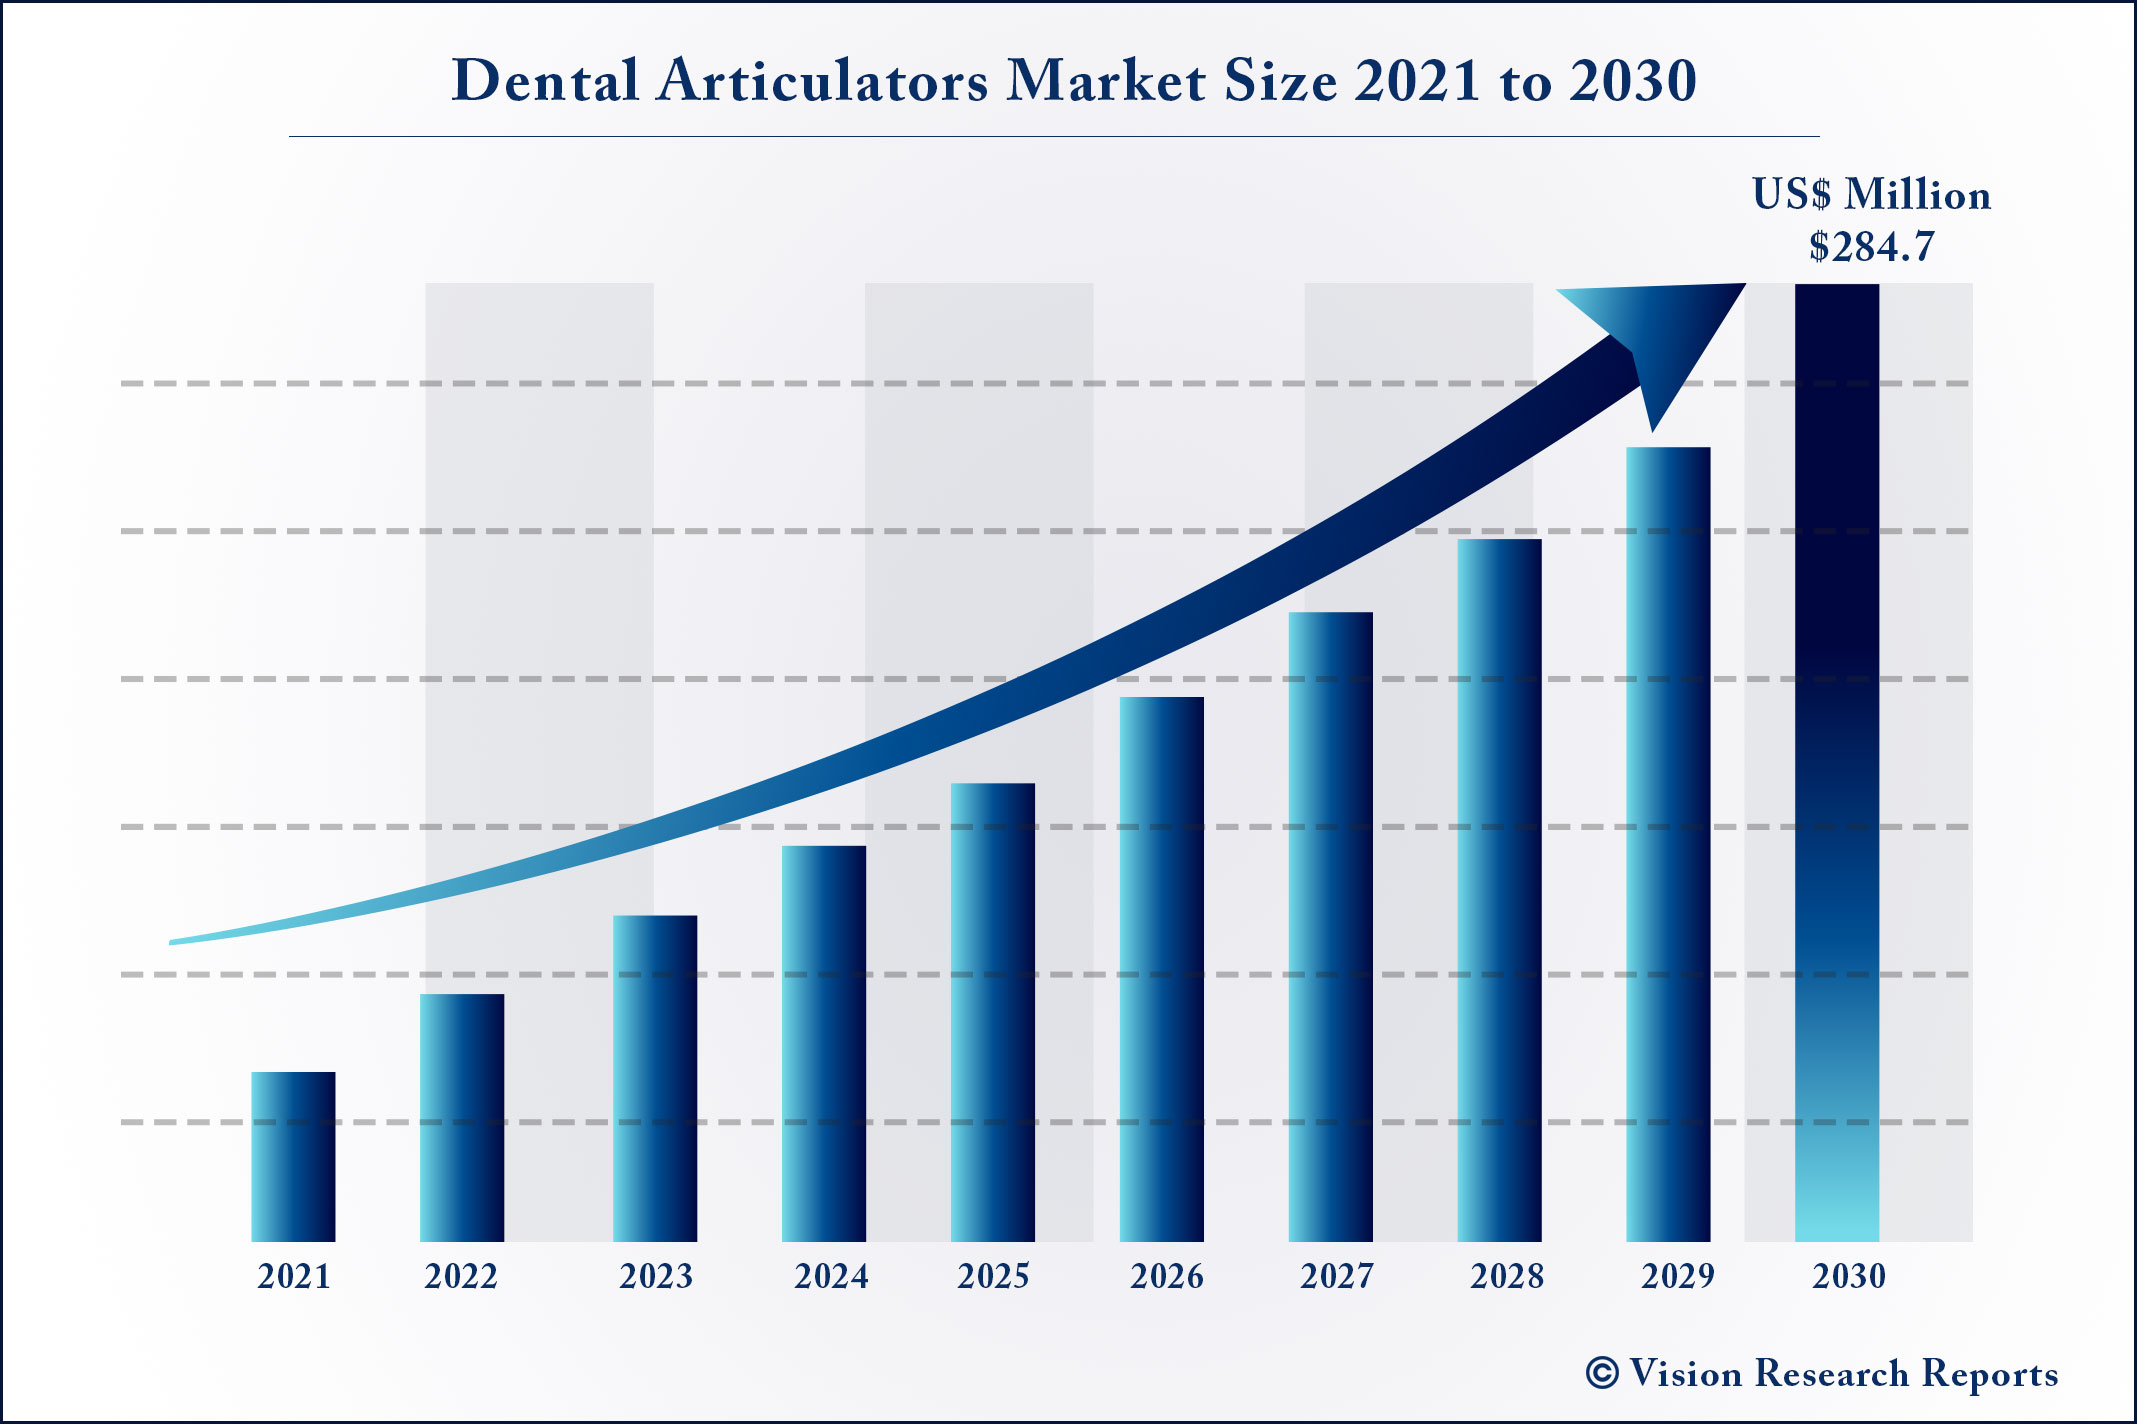 Dental Articulators Market Size 2021 to 2030